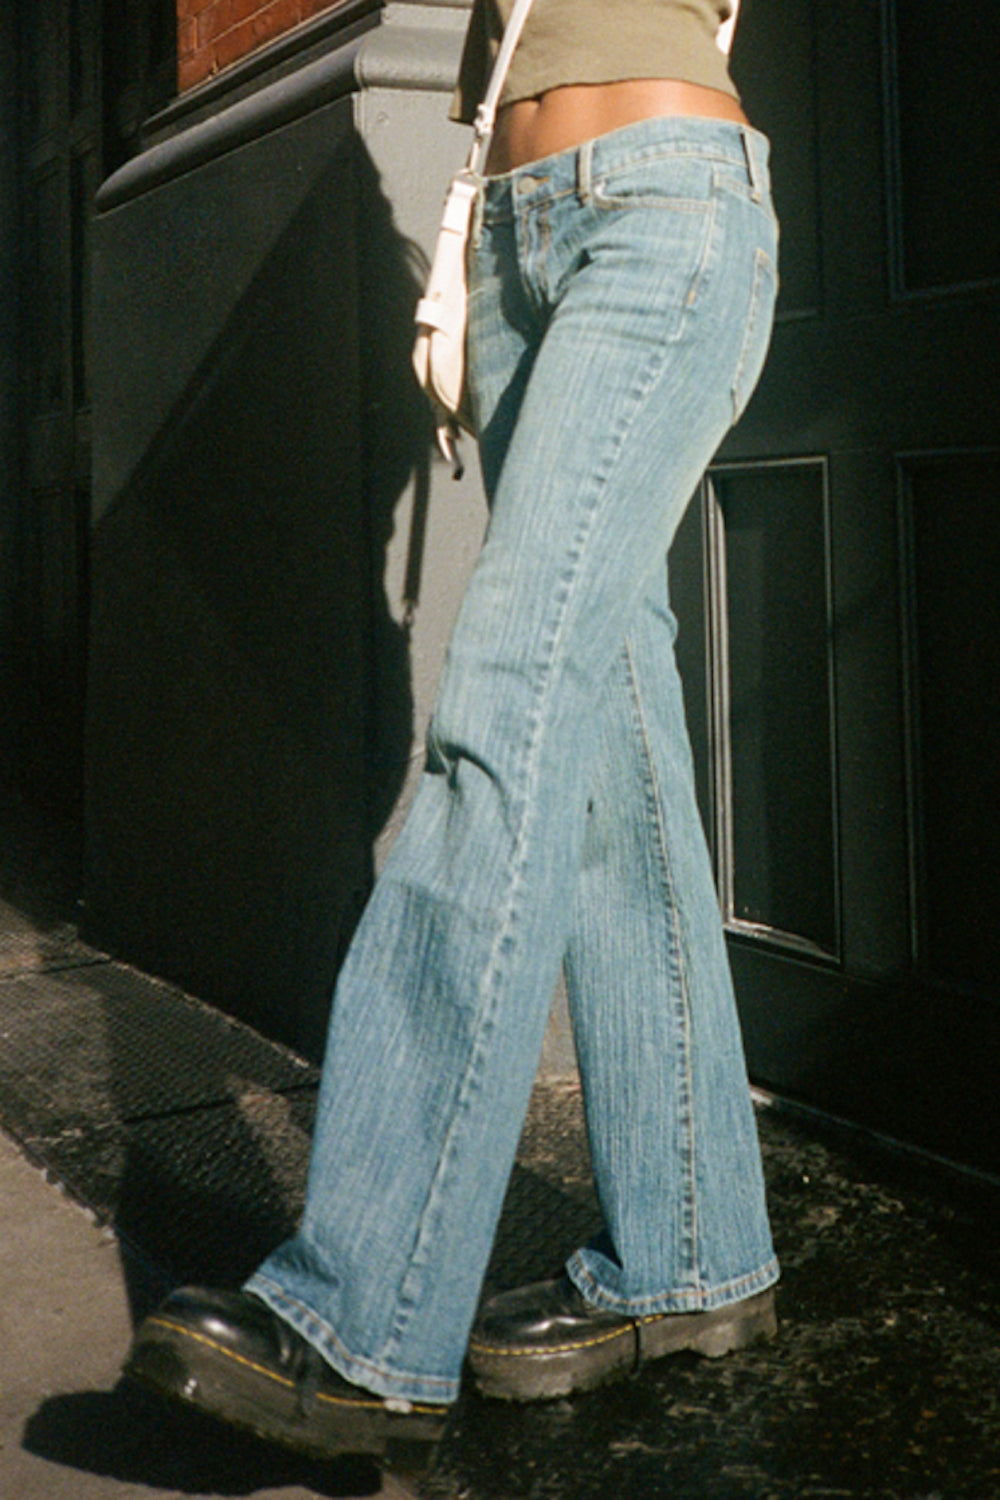 Brielle 90's Jeans